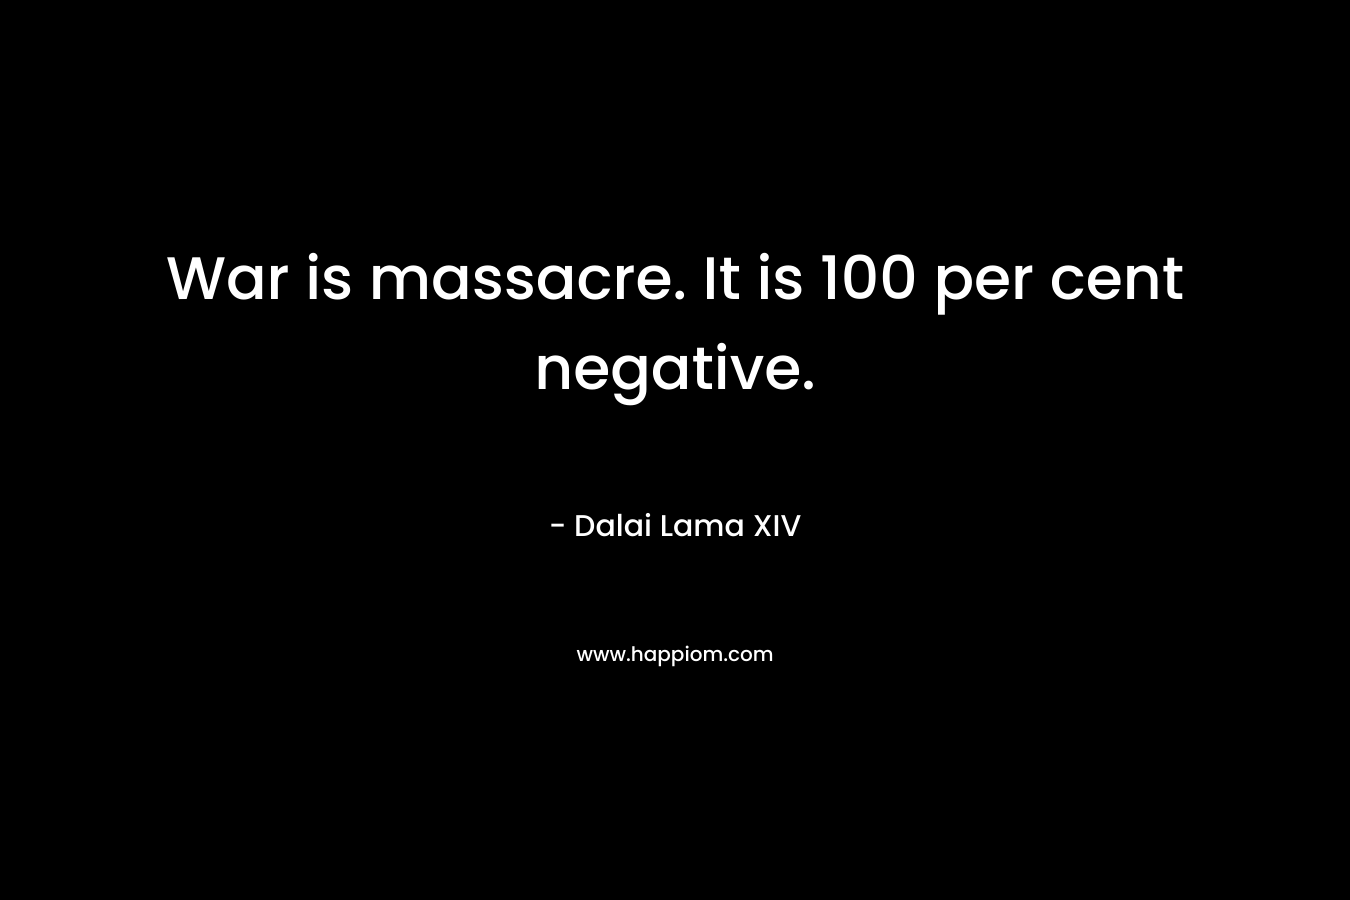 War is massacre. It is 100 per cent negative.